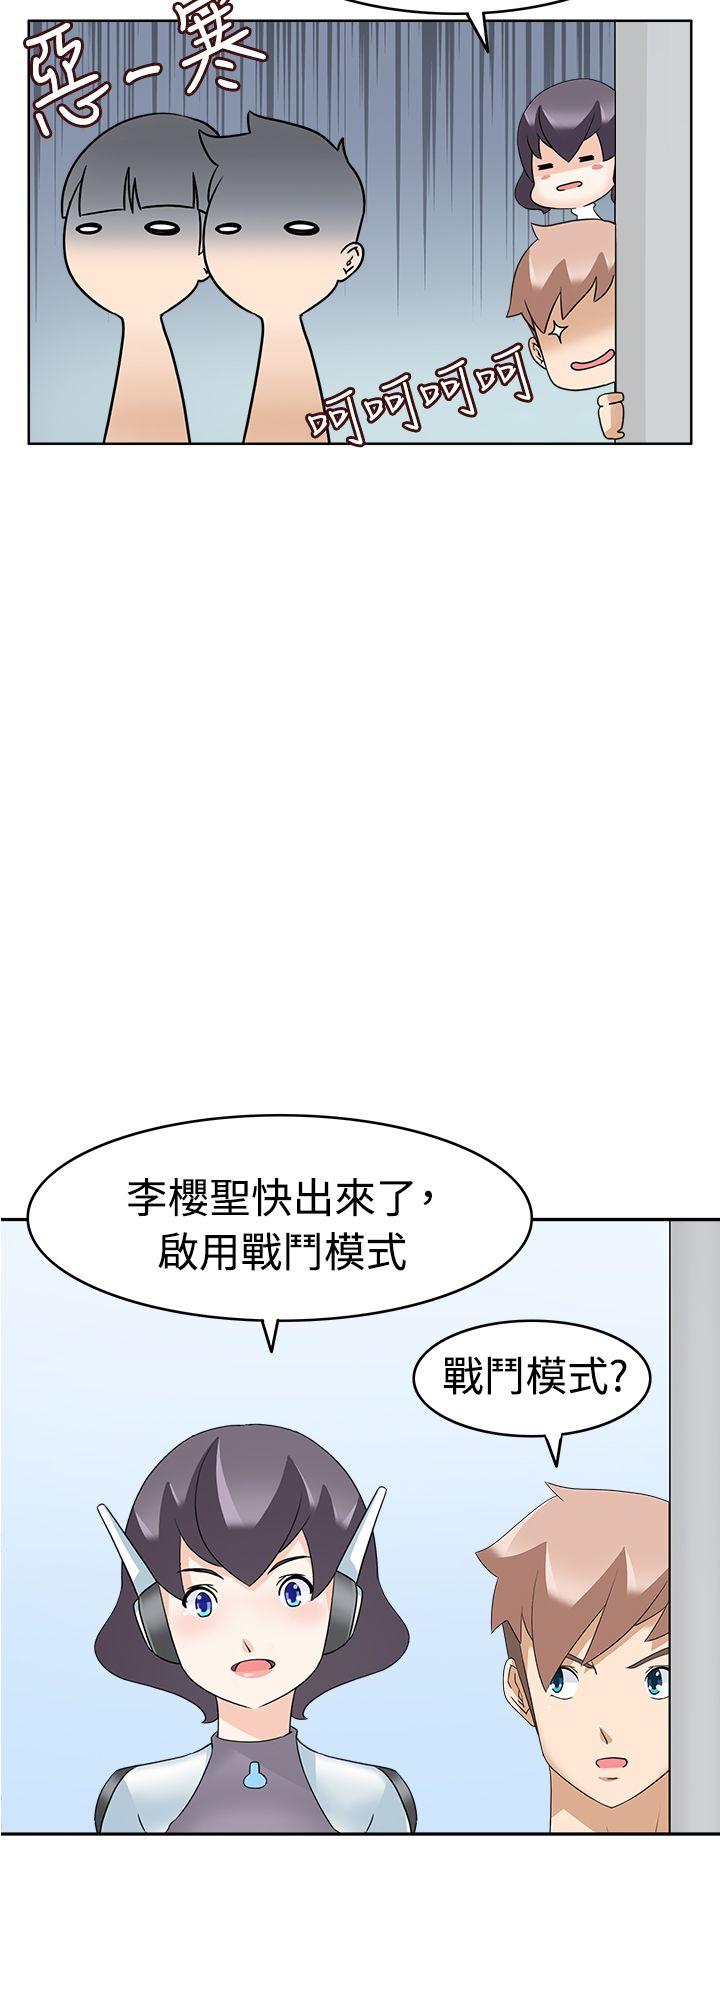 韩国污漫画 軍人的誘惑 第15话 21